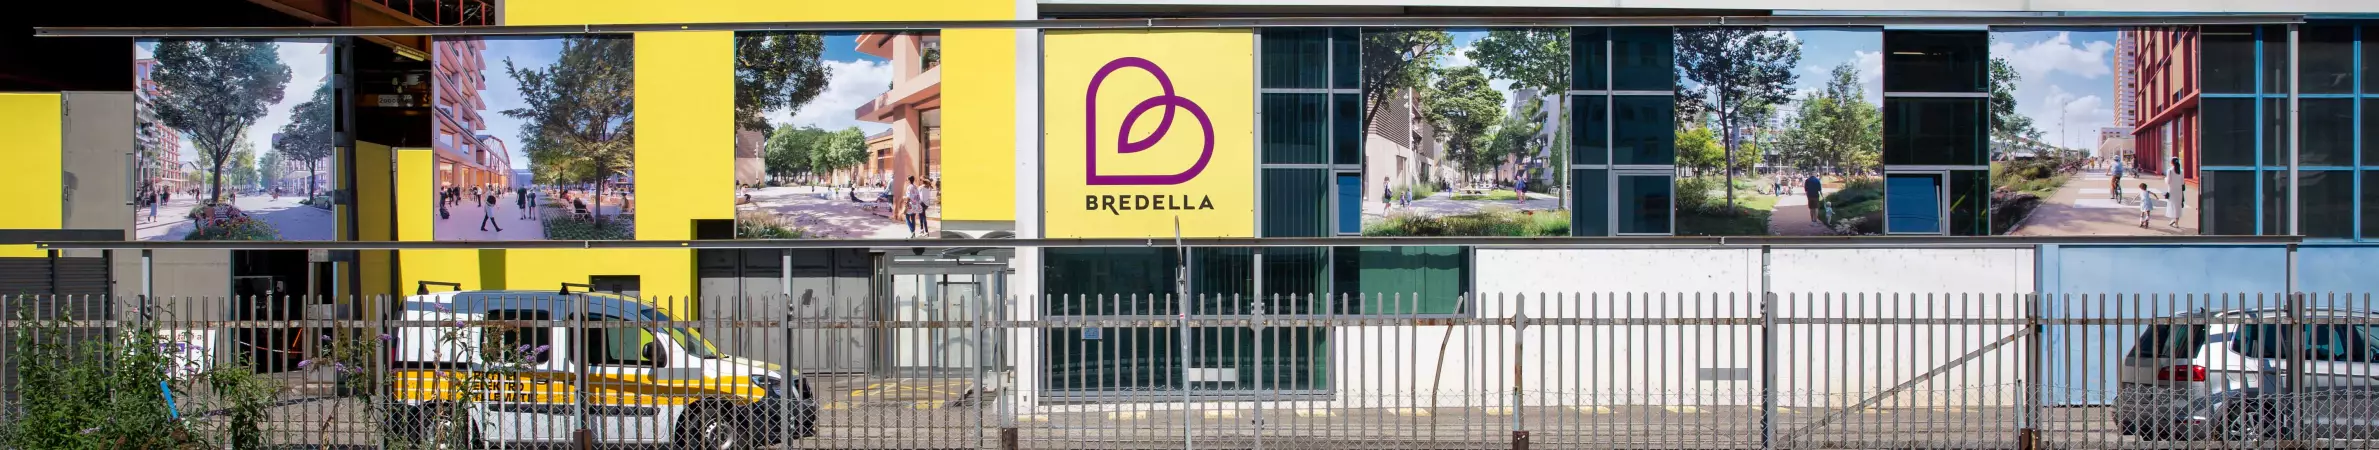 Blick vom Bahnhof Pratteln in Richtung Bredella Areal. Über dem Arealzaun sind 6 Zukunftsvisualisierungen des Areals und das Bredella Logo auf einzelenen zwei mal zwei Meter Schildern zu sehen.